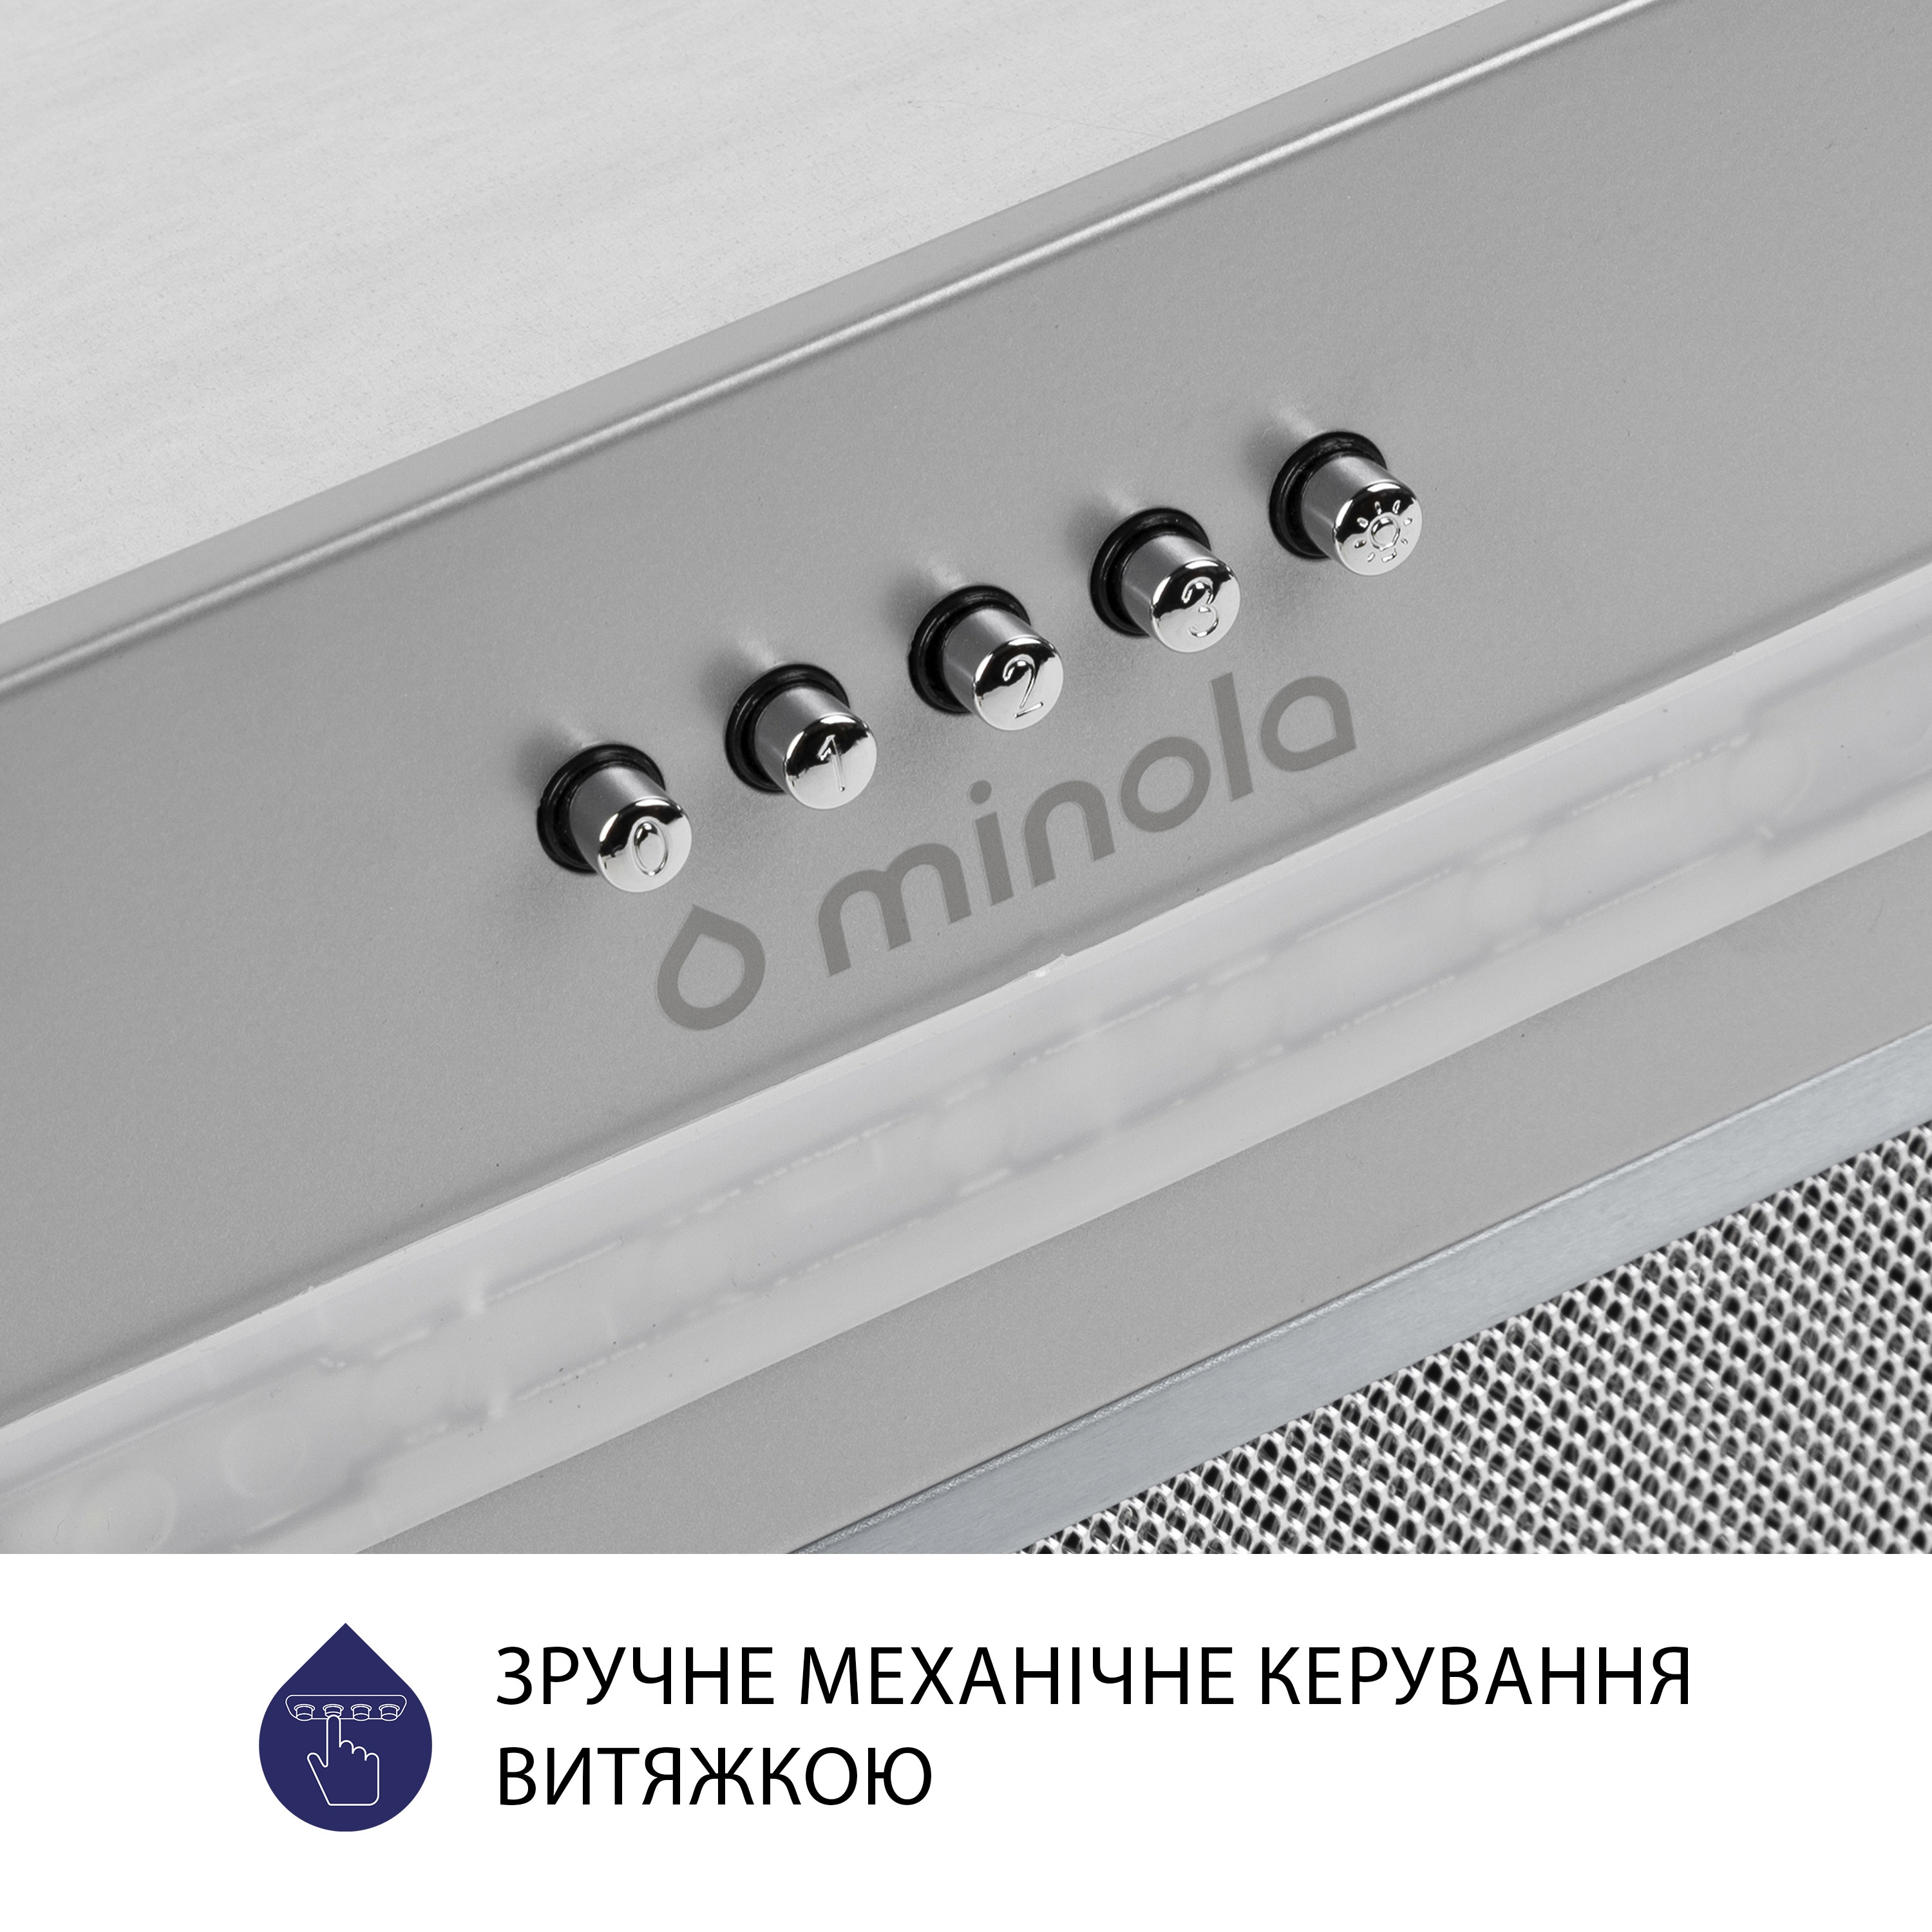 Витяжка кухонная полновстраиваемая Minola HBI 5323 GR 800 LED инструкция - изображение 6